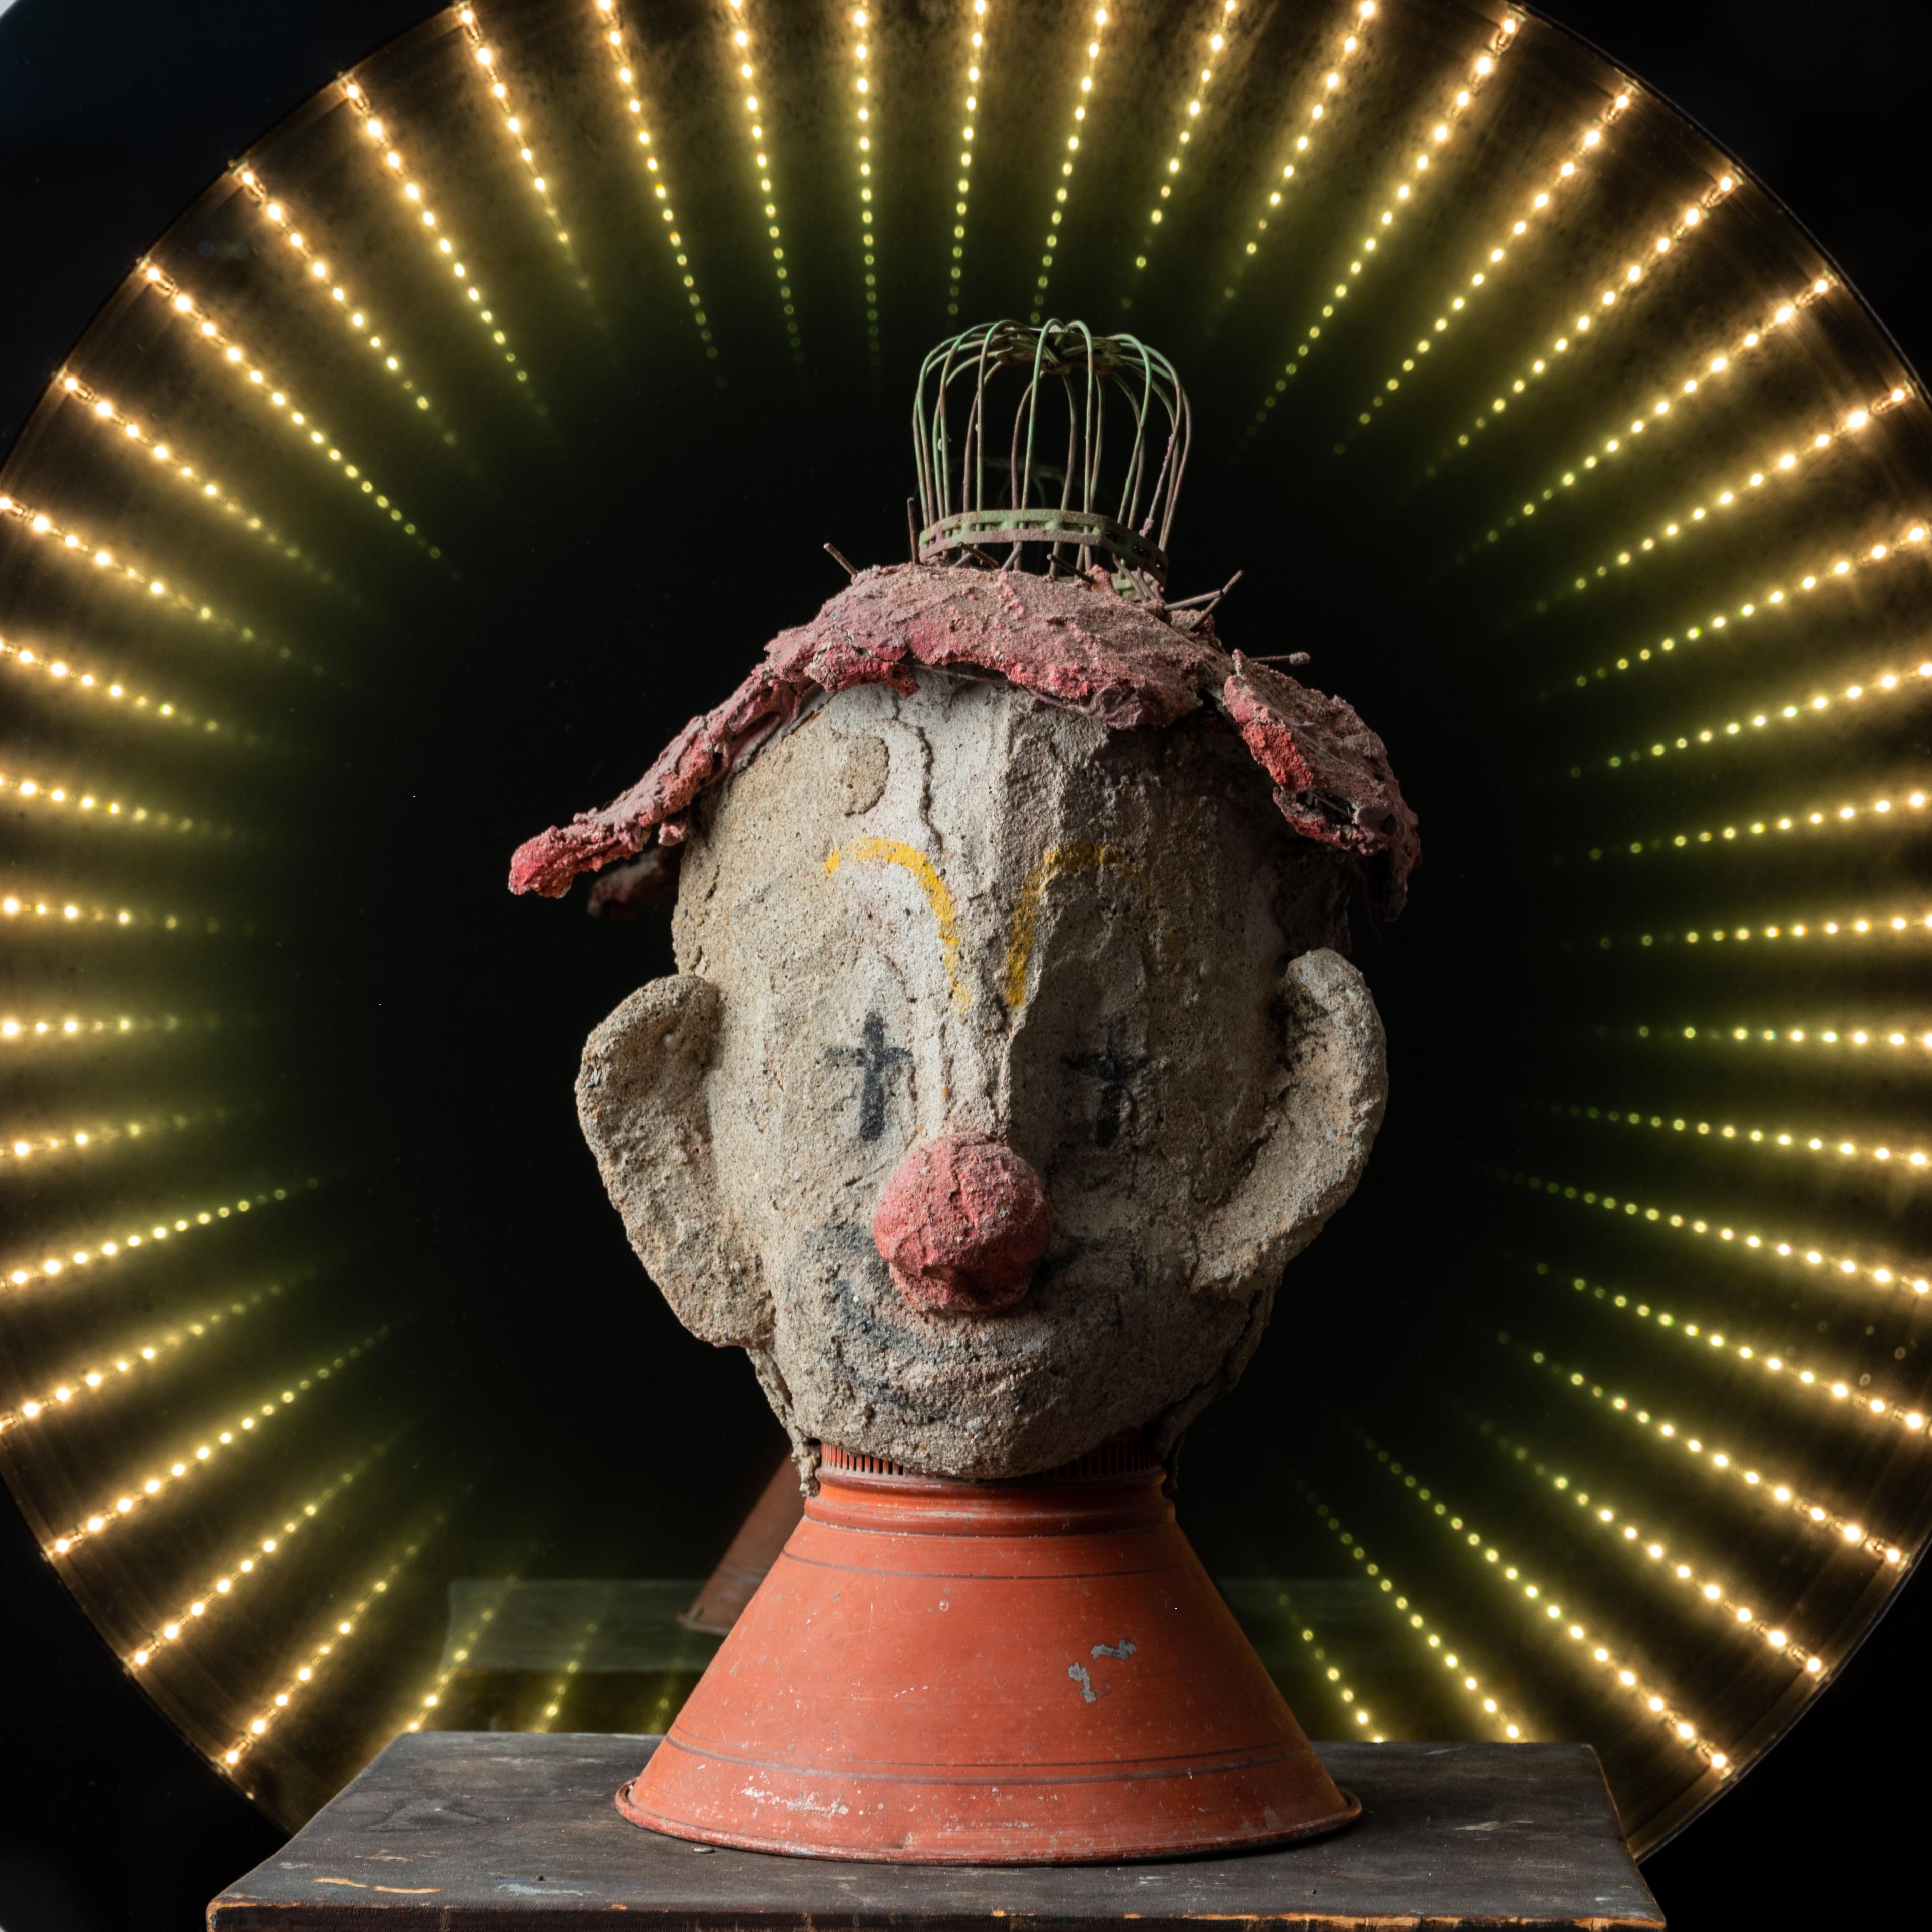 Aage Hogfeldt

(Américain, 1925-2014)

Un buste de clown fabriqué à partir de béton et de pièces de lampes trouvées. 

10 x 10 x 17 pouces

En 1954, Aage Hogfeldt a fondé une colonie d'artistes dans une ancienne glacière sur la Route 1 à Westbrook,